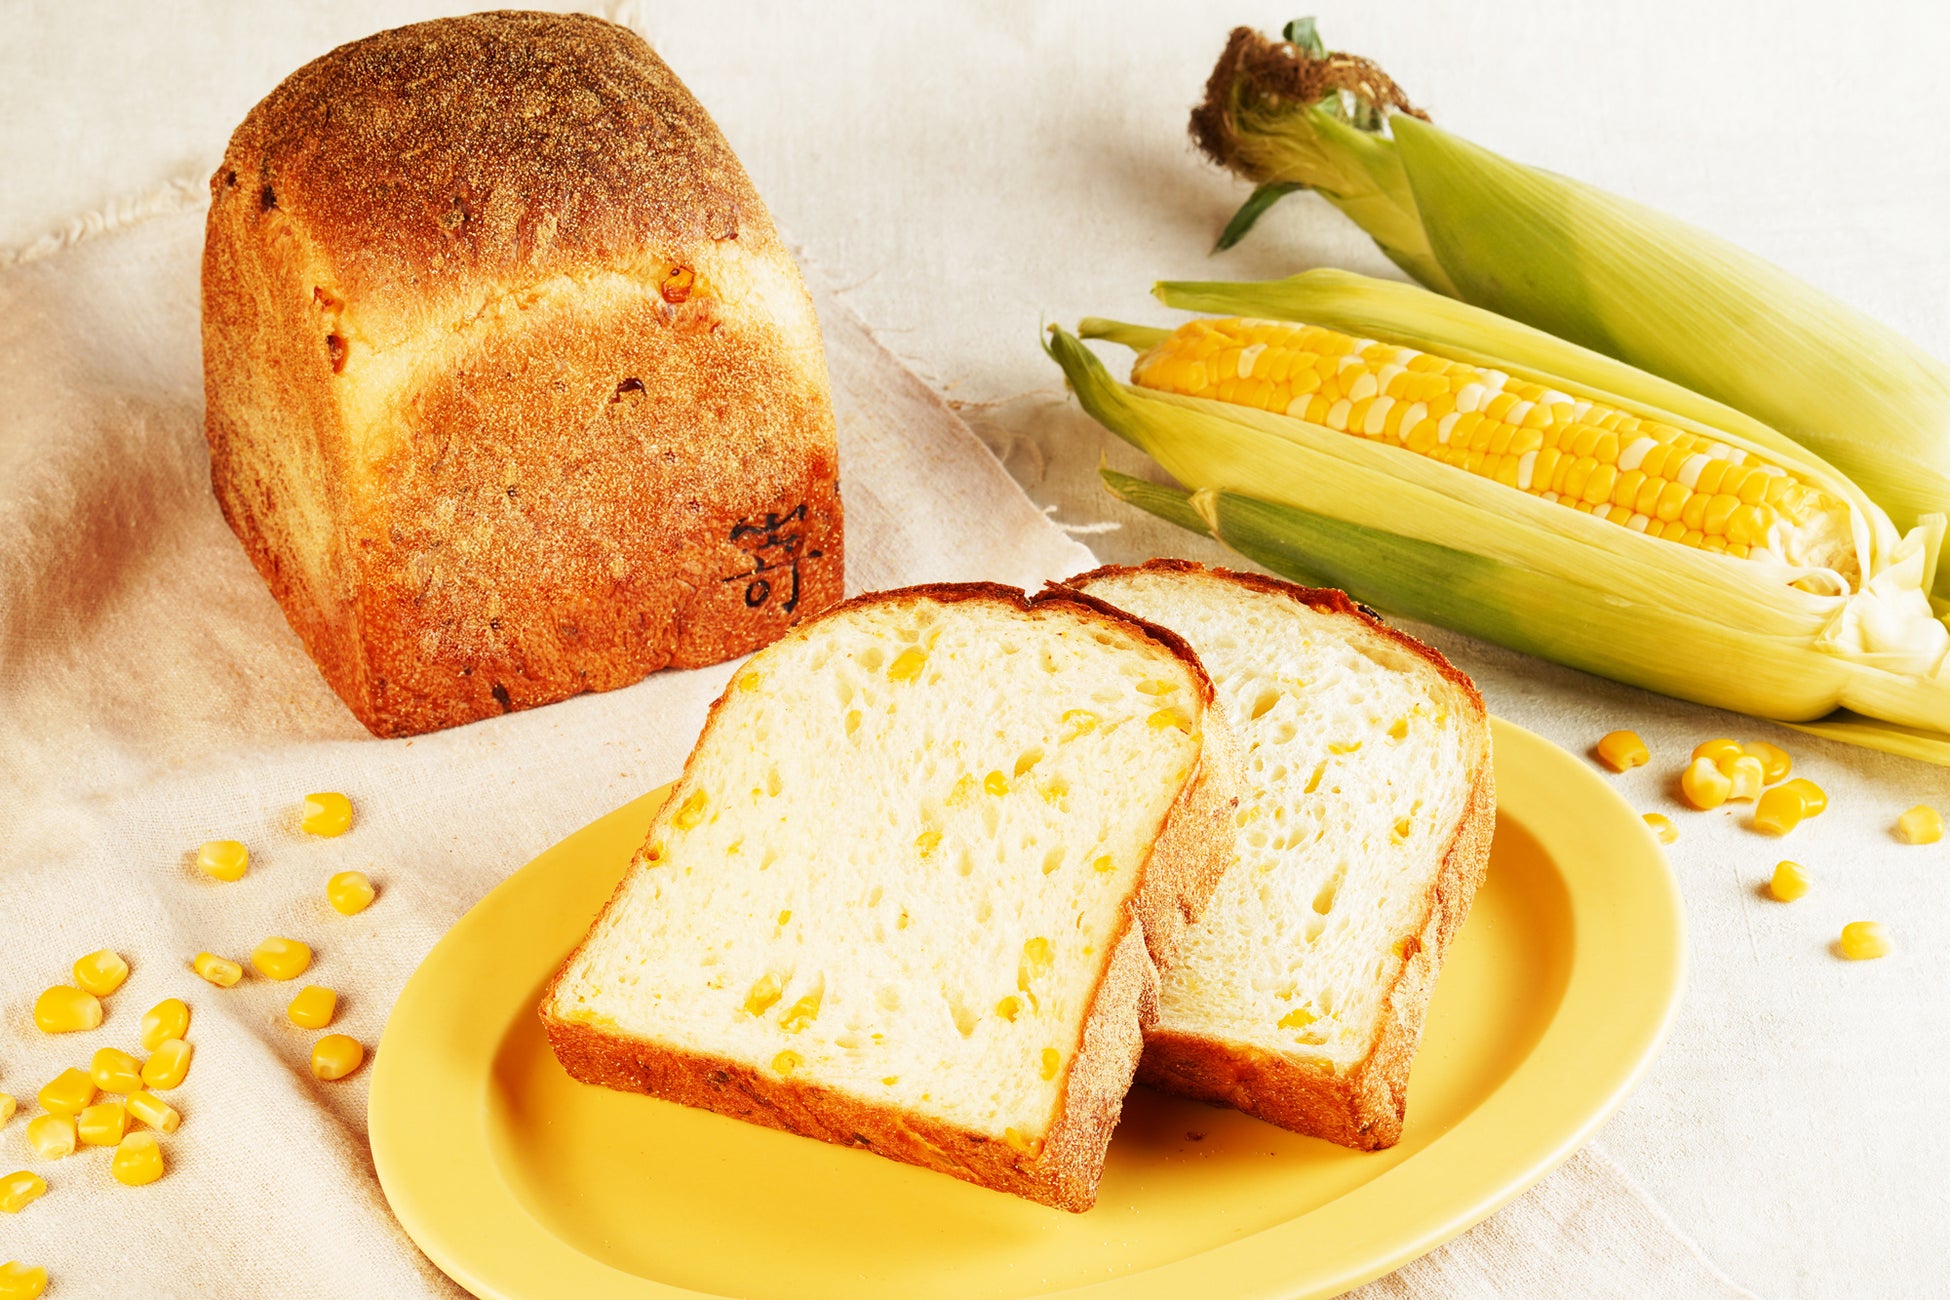 嵜本ベーカリーにて、8月 1 日(月)より、北海道十勝産とうもろこしを使用した食パン「 北海道育ちのとうもろこし食パン 」が登場 します。